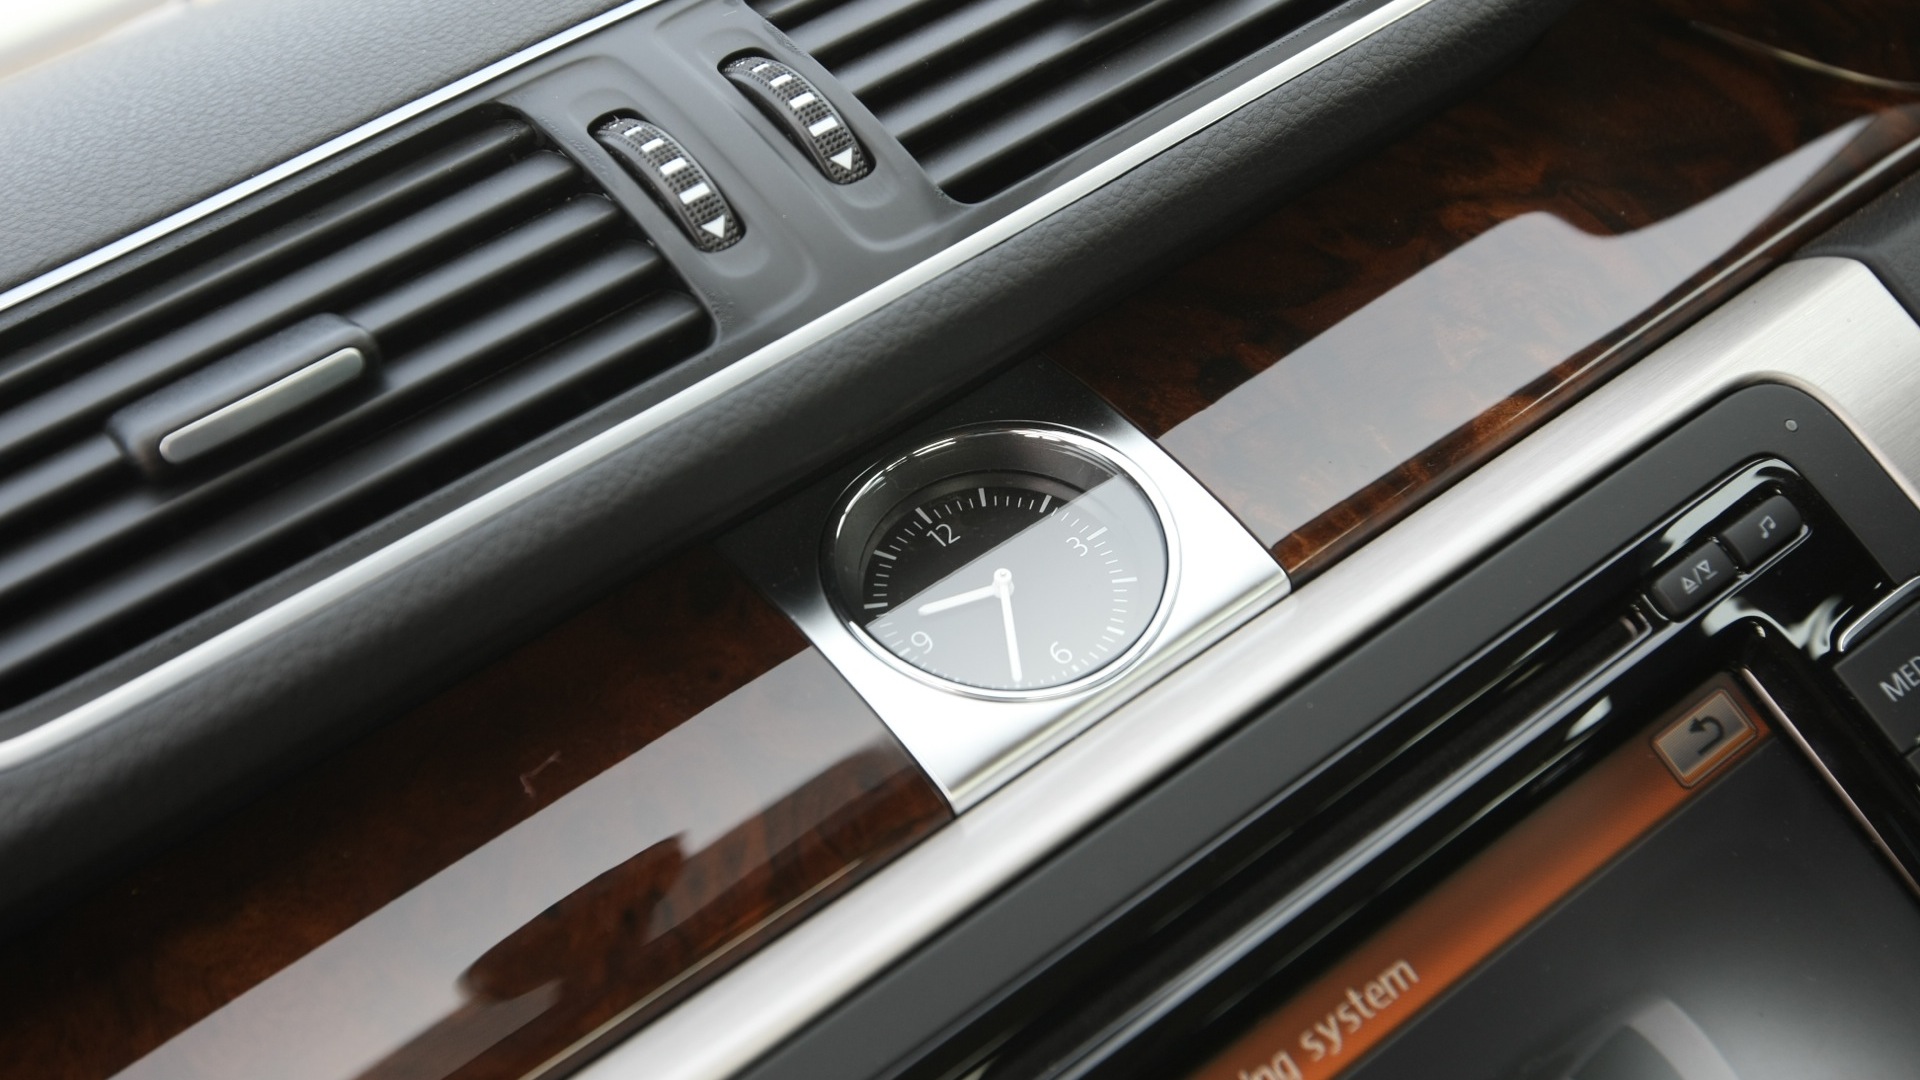 Volkswagen-Passat-2013-Trendline-MT-Interior